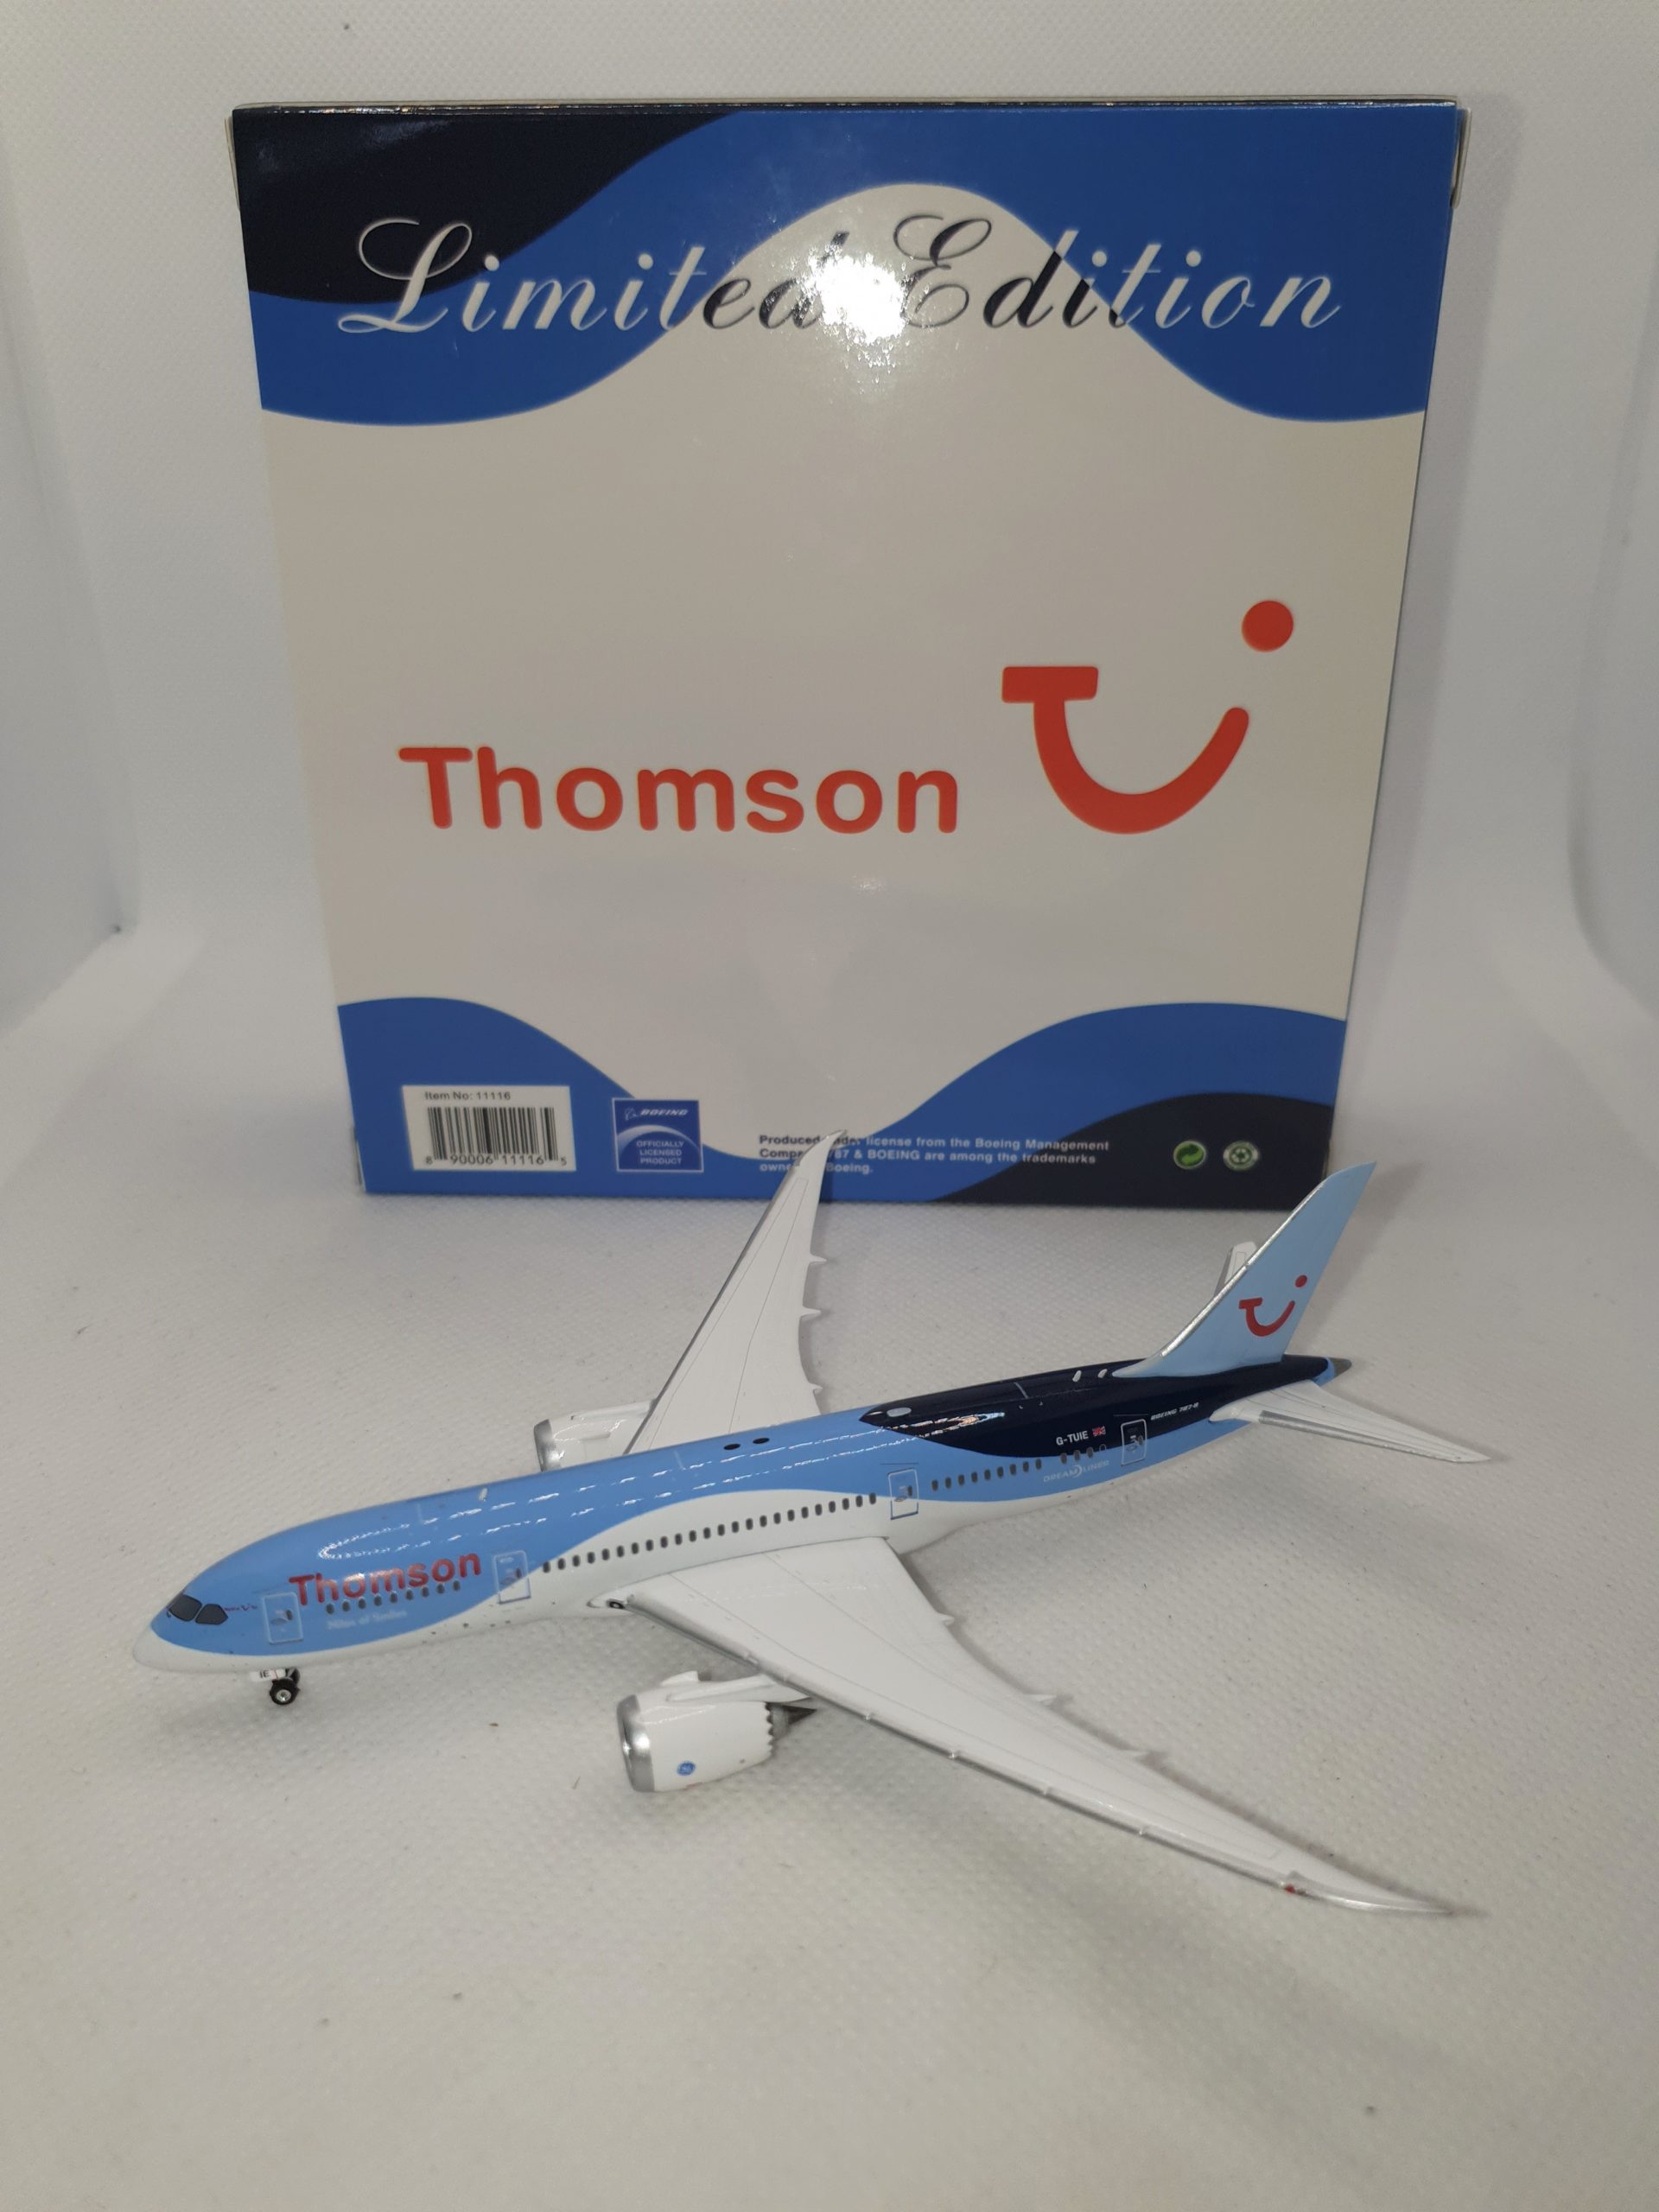 Phoenix 1:400 Thomson Airways Boeing 787-800 Dreamliner "G-TUIE" 